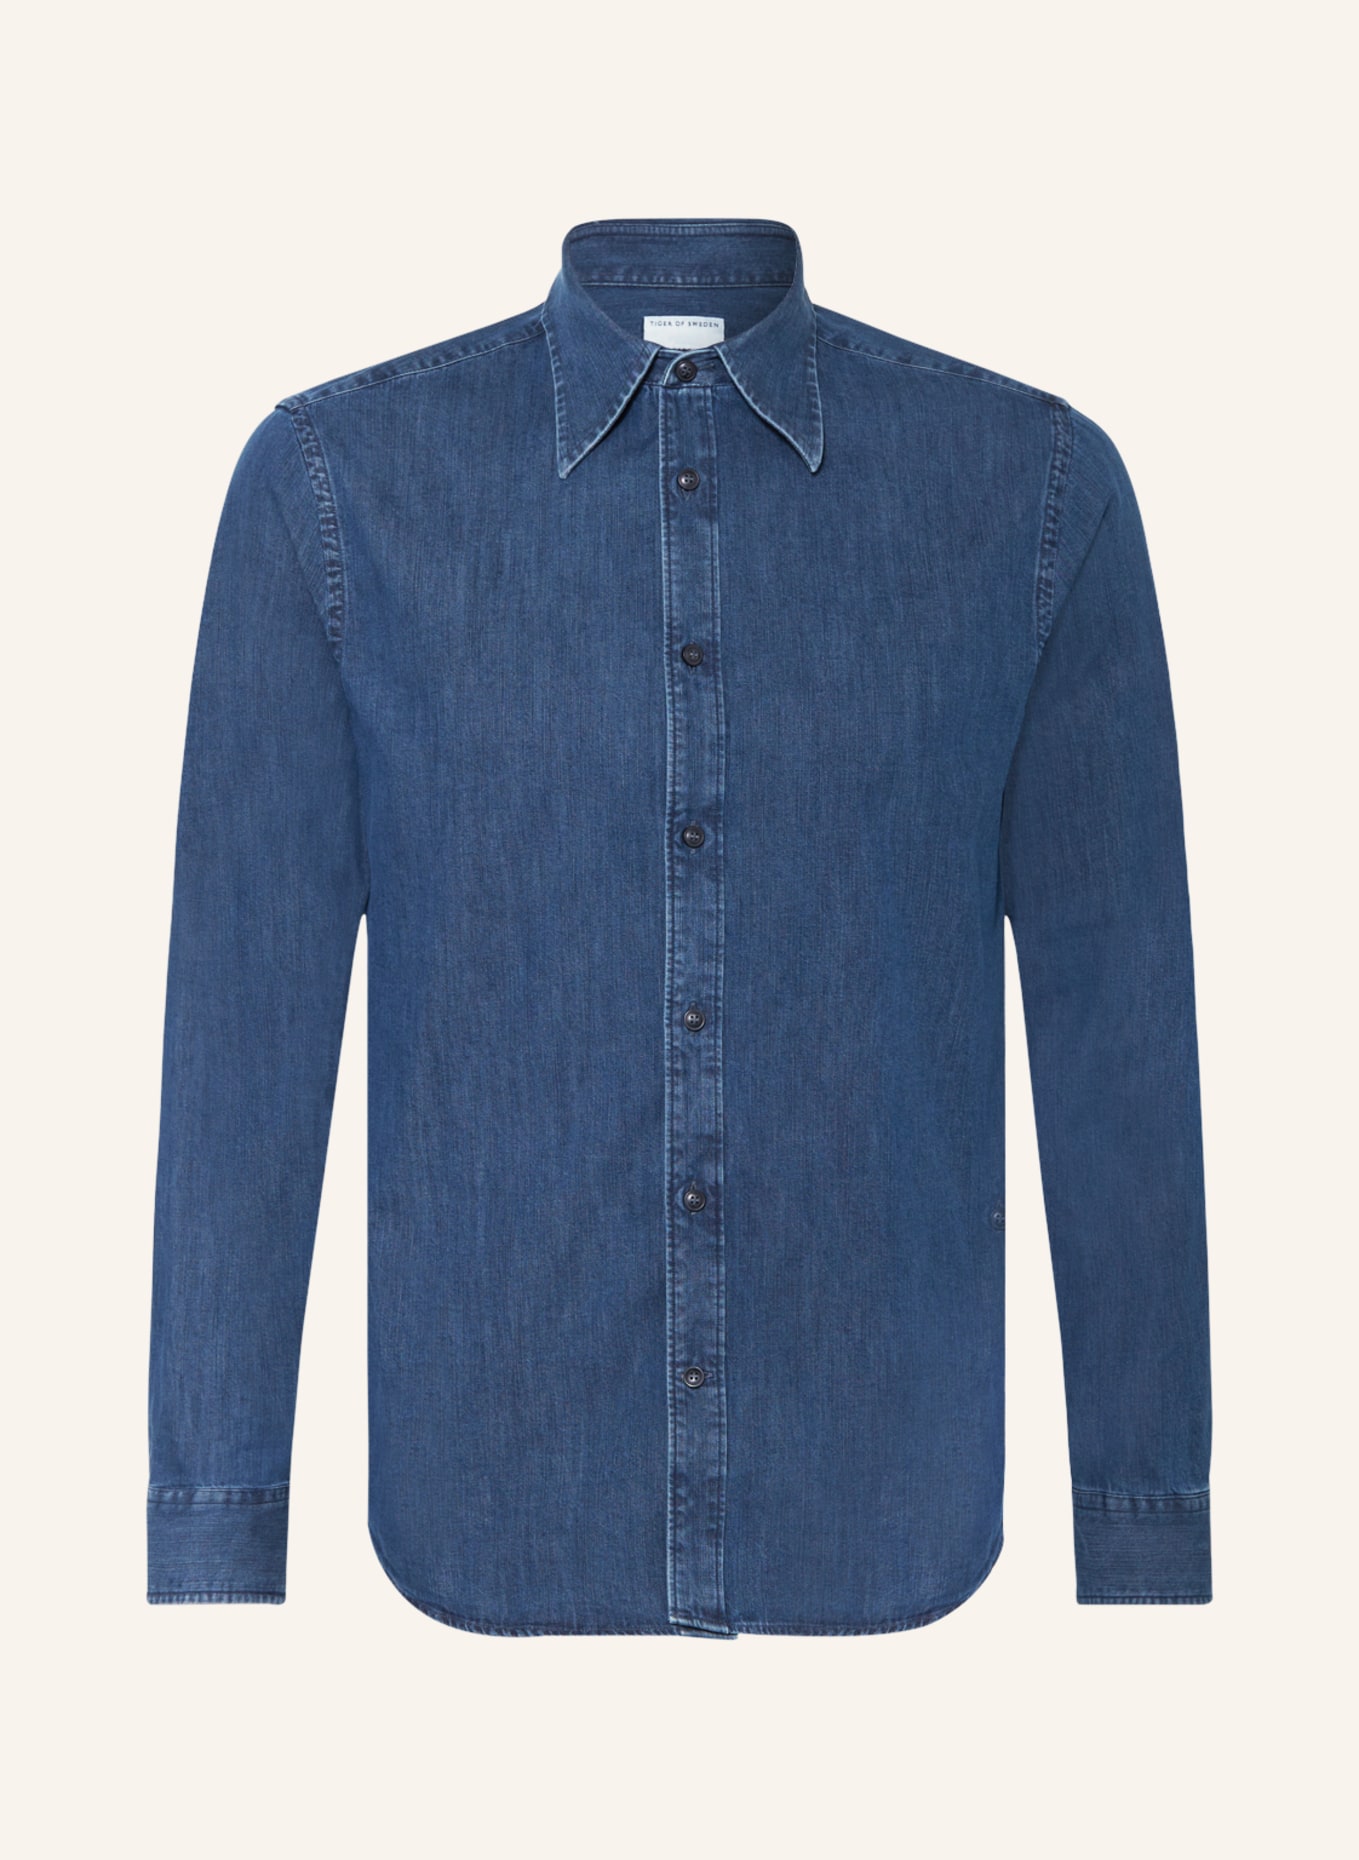 TIGER OF SWEDEN Denim shirt AMADEEOS regular fit, Color: 2C3 Denim Blue (Image 1)